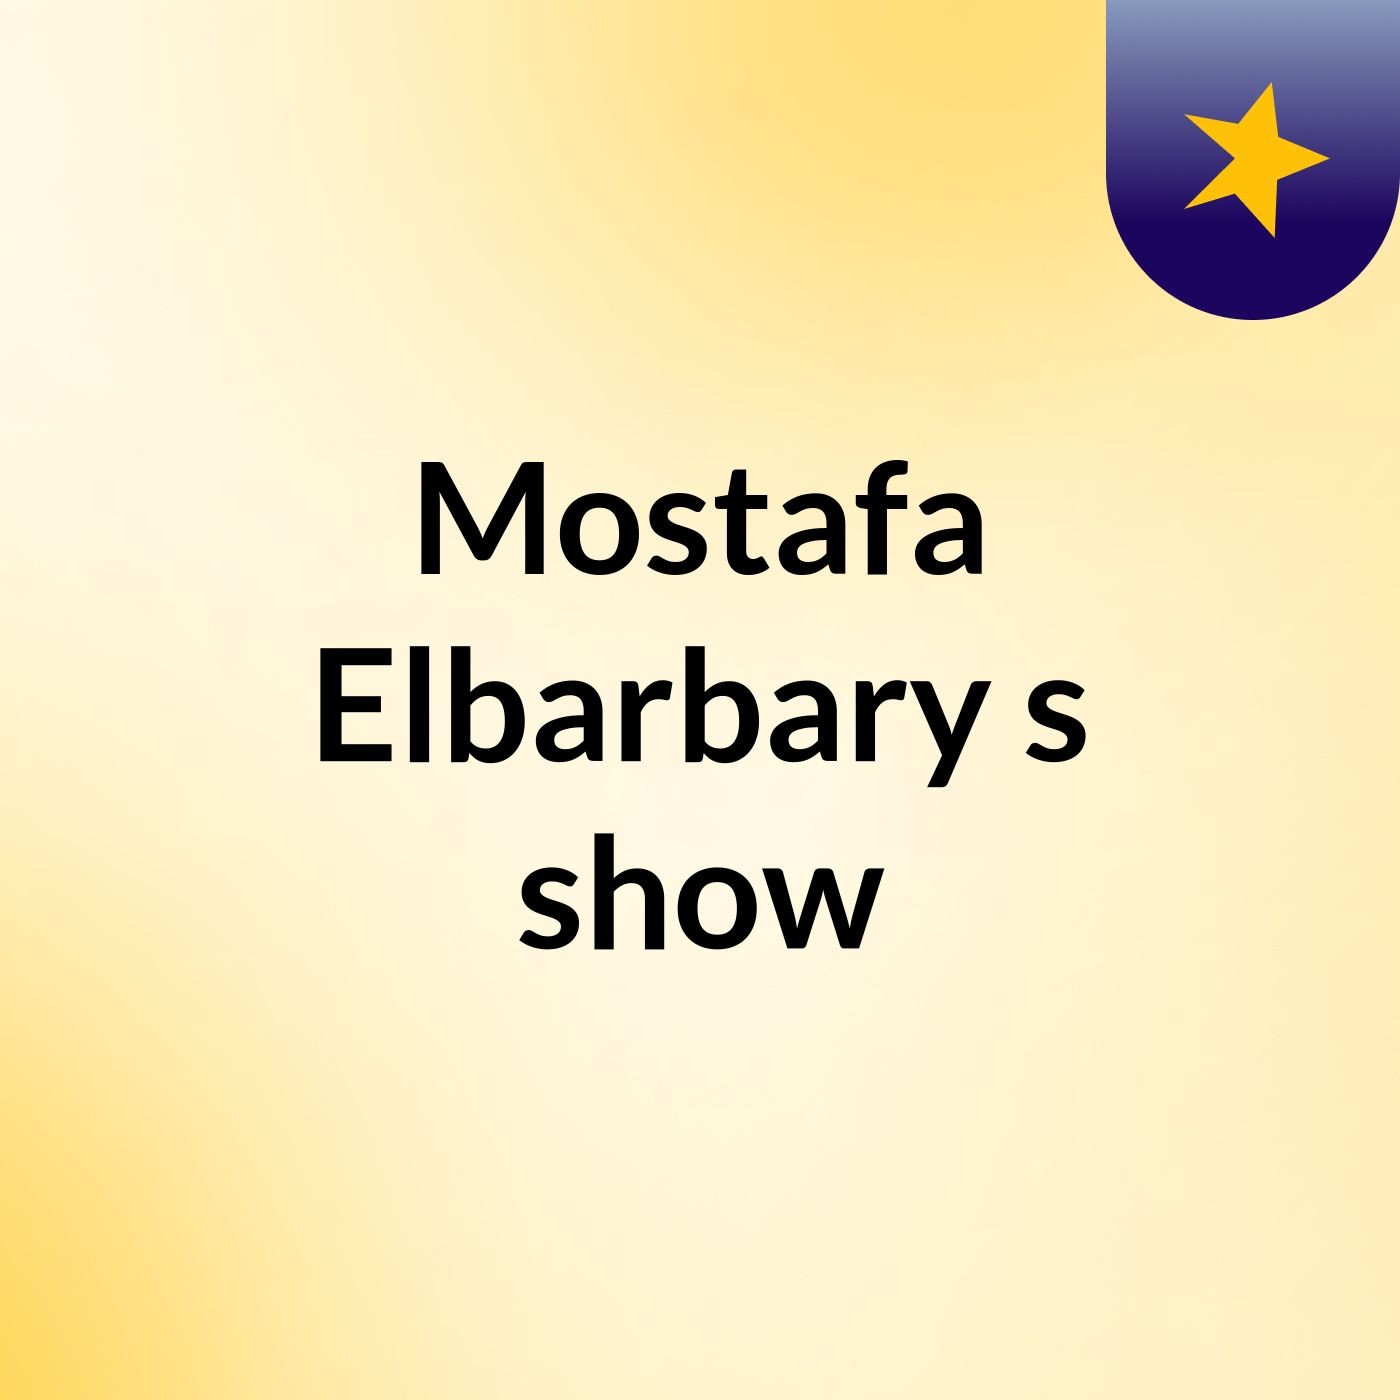 Mostafa Elbarbary's show